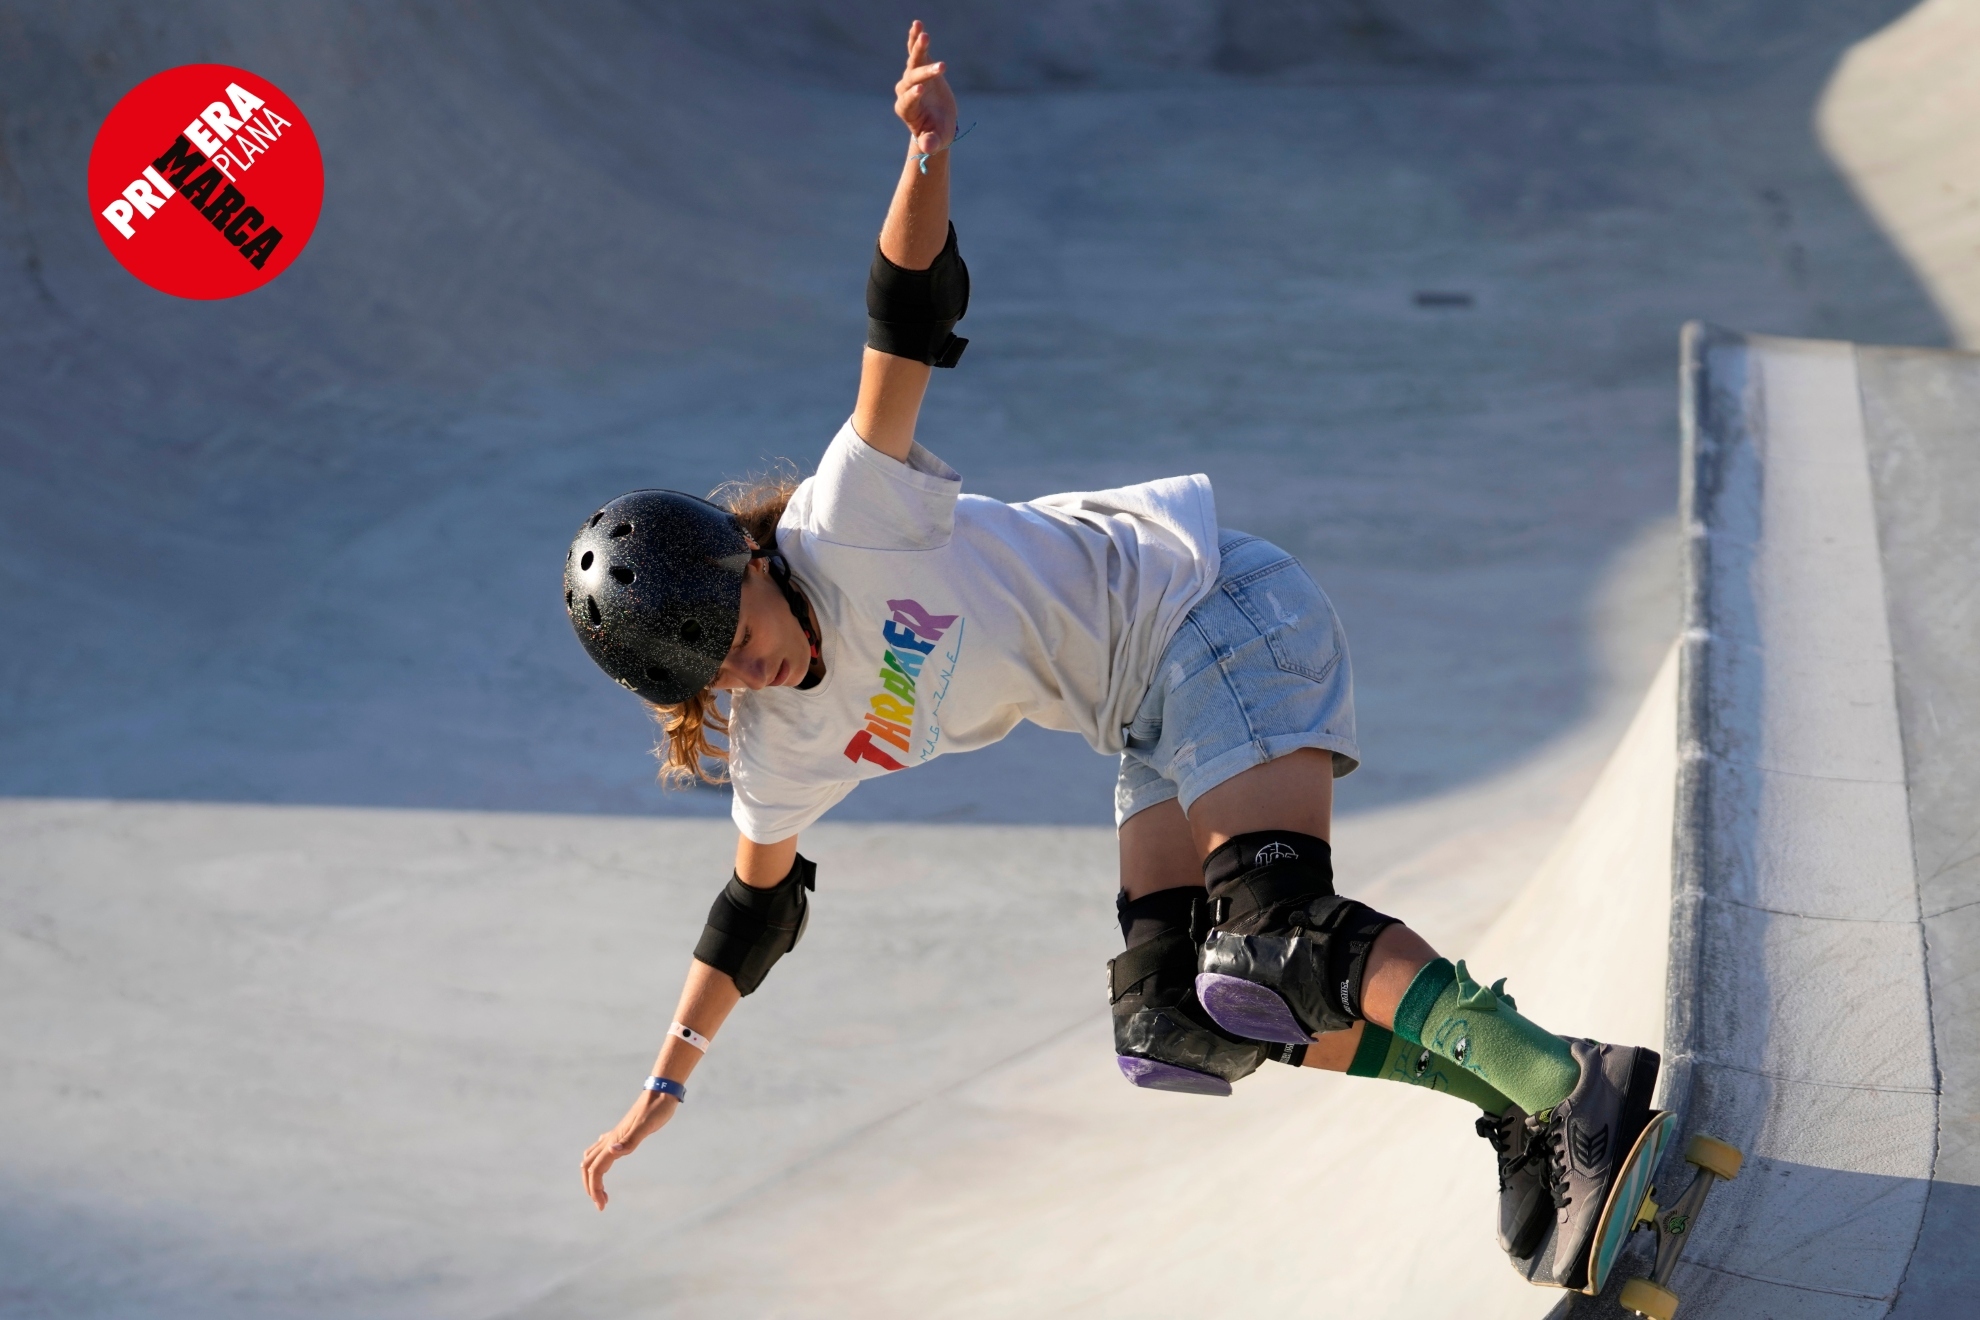 Naia Laso, la skater que pelea por los Juegos con 14 años: "Me haría ilusión"